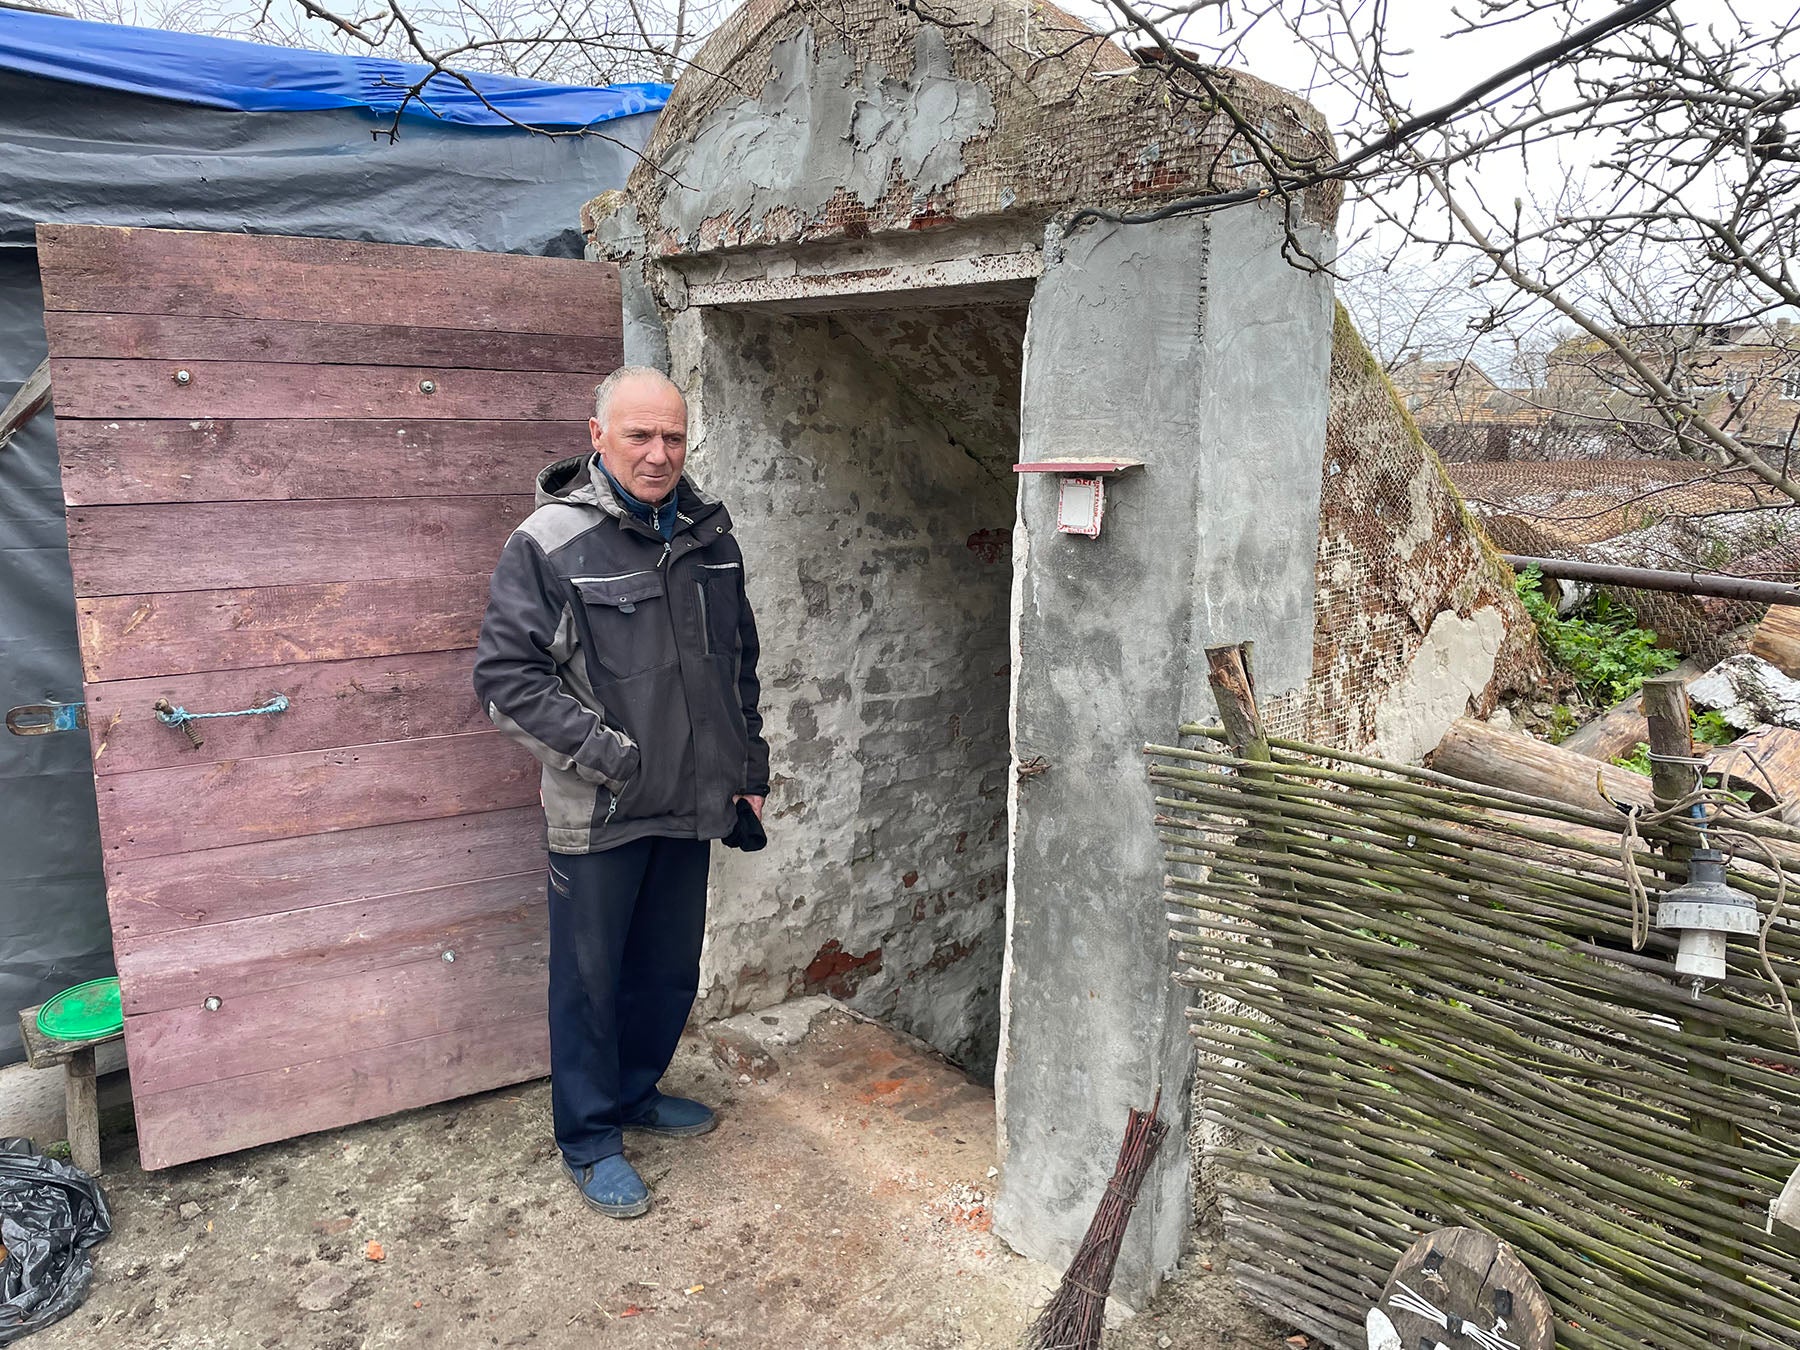 Volodymyr Ivashchenko, un habitant de Yahidne, dans le nord de l’Ukraine, photographié le 17 avril 2022 devant l’entrée de la cave où sa famille s’est réfugiée début mars, peu après le début de l’invasion russe. Par la suite, les soldats russes ont obligé sa famille a rejoindre d’autres villageois détenus dans le sous-sol d’une école. Sa belle-mère, Nadezhda Buchenko, âgée de 70 ans, est décédée dans ce sous-sol.